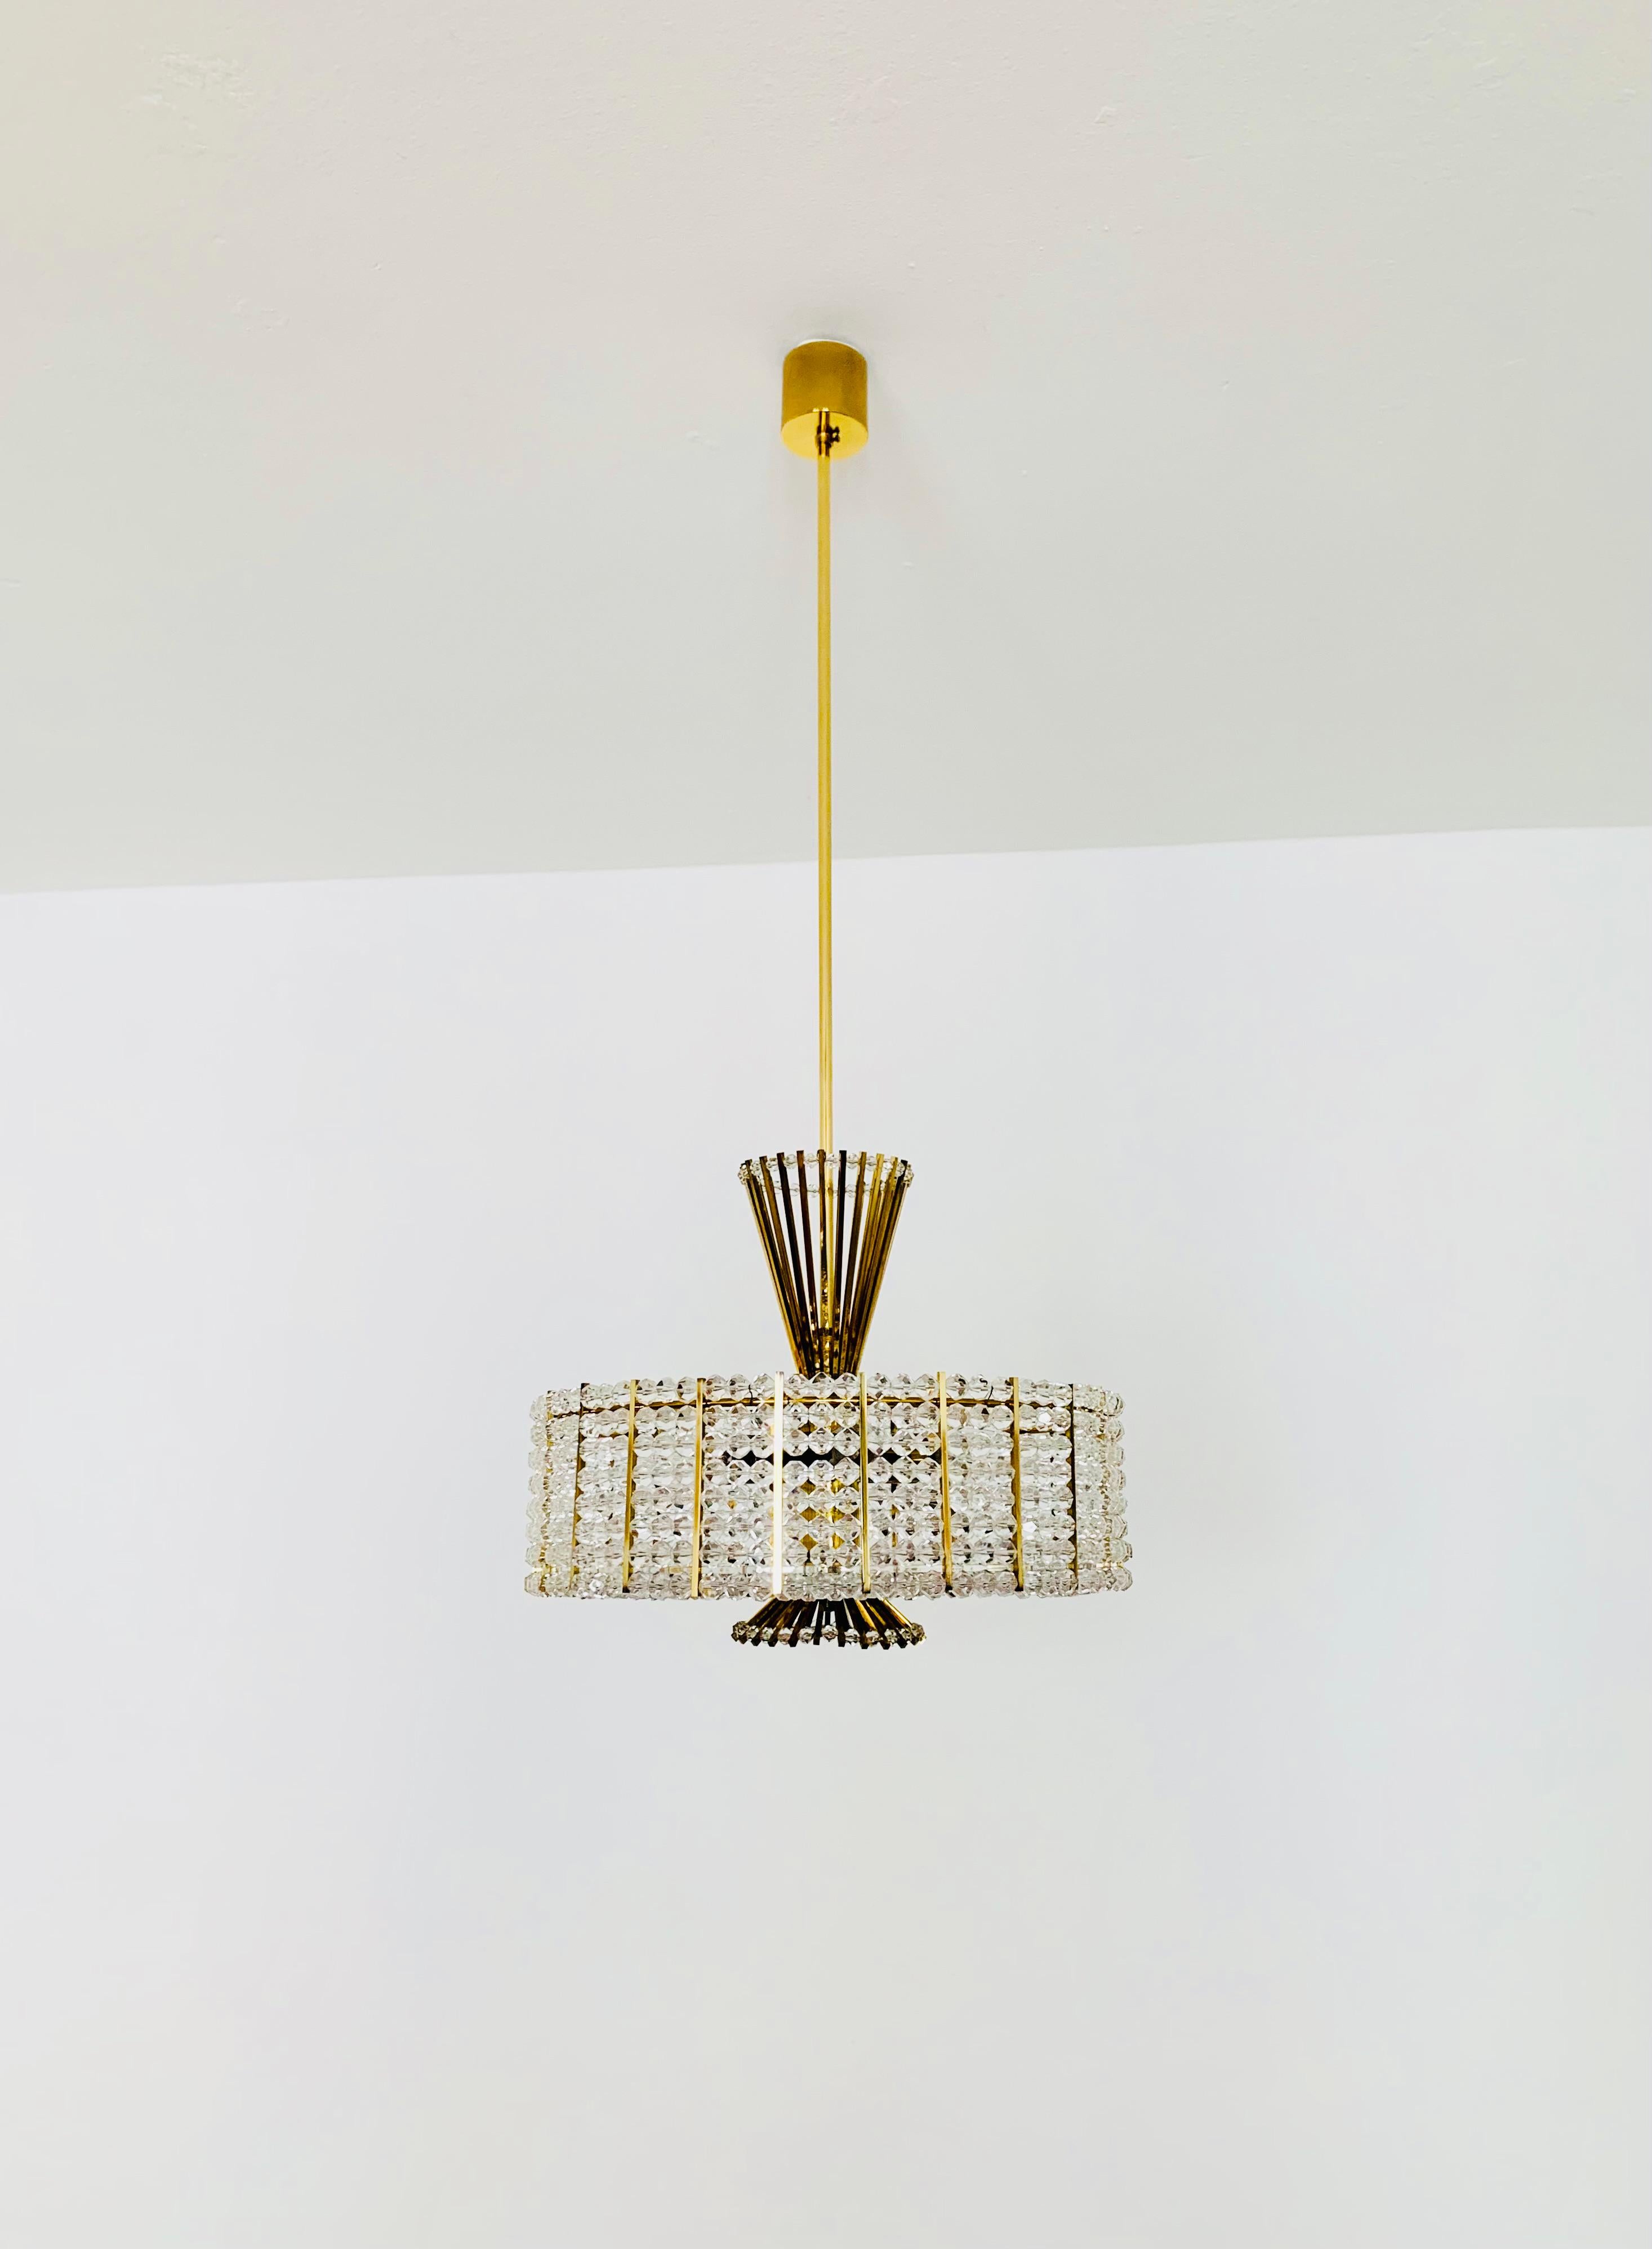 acrylic chandeliers